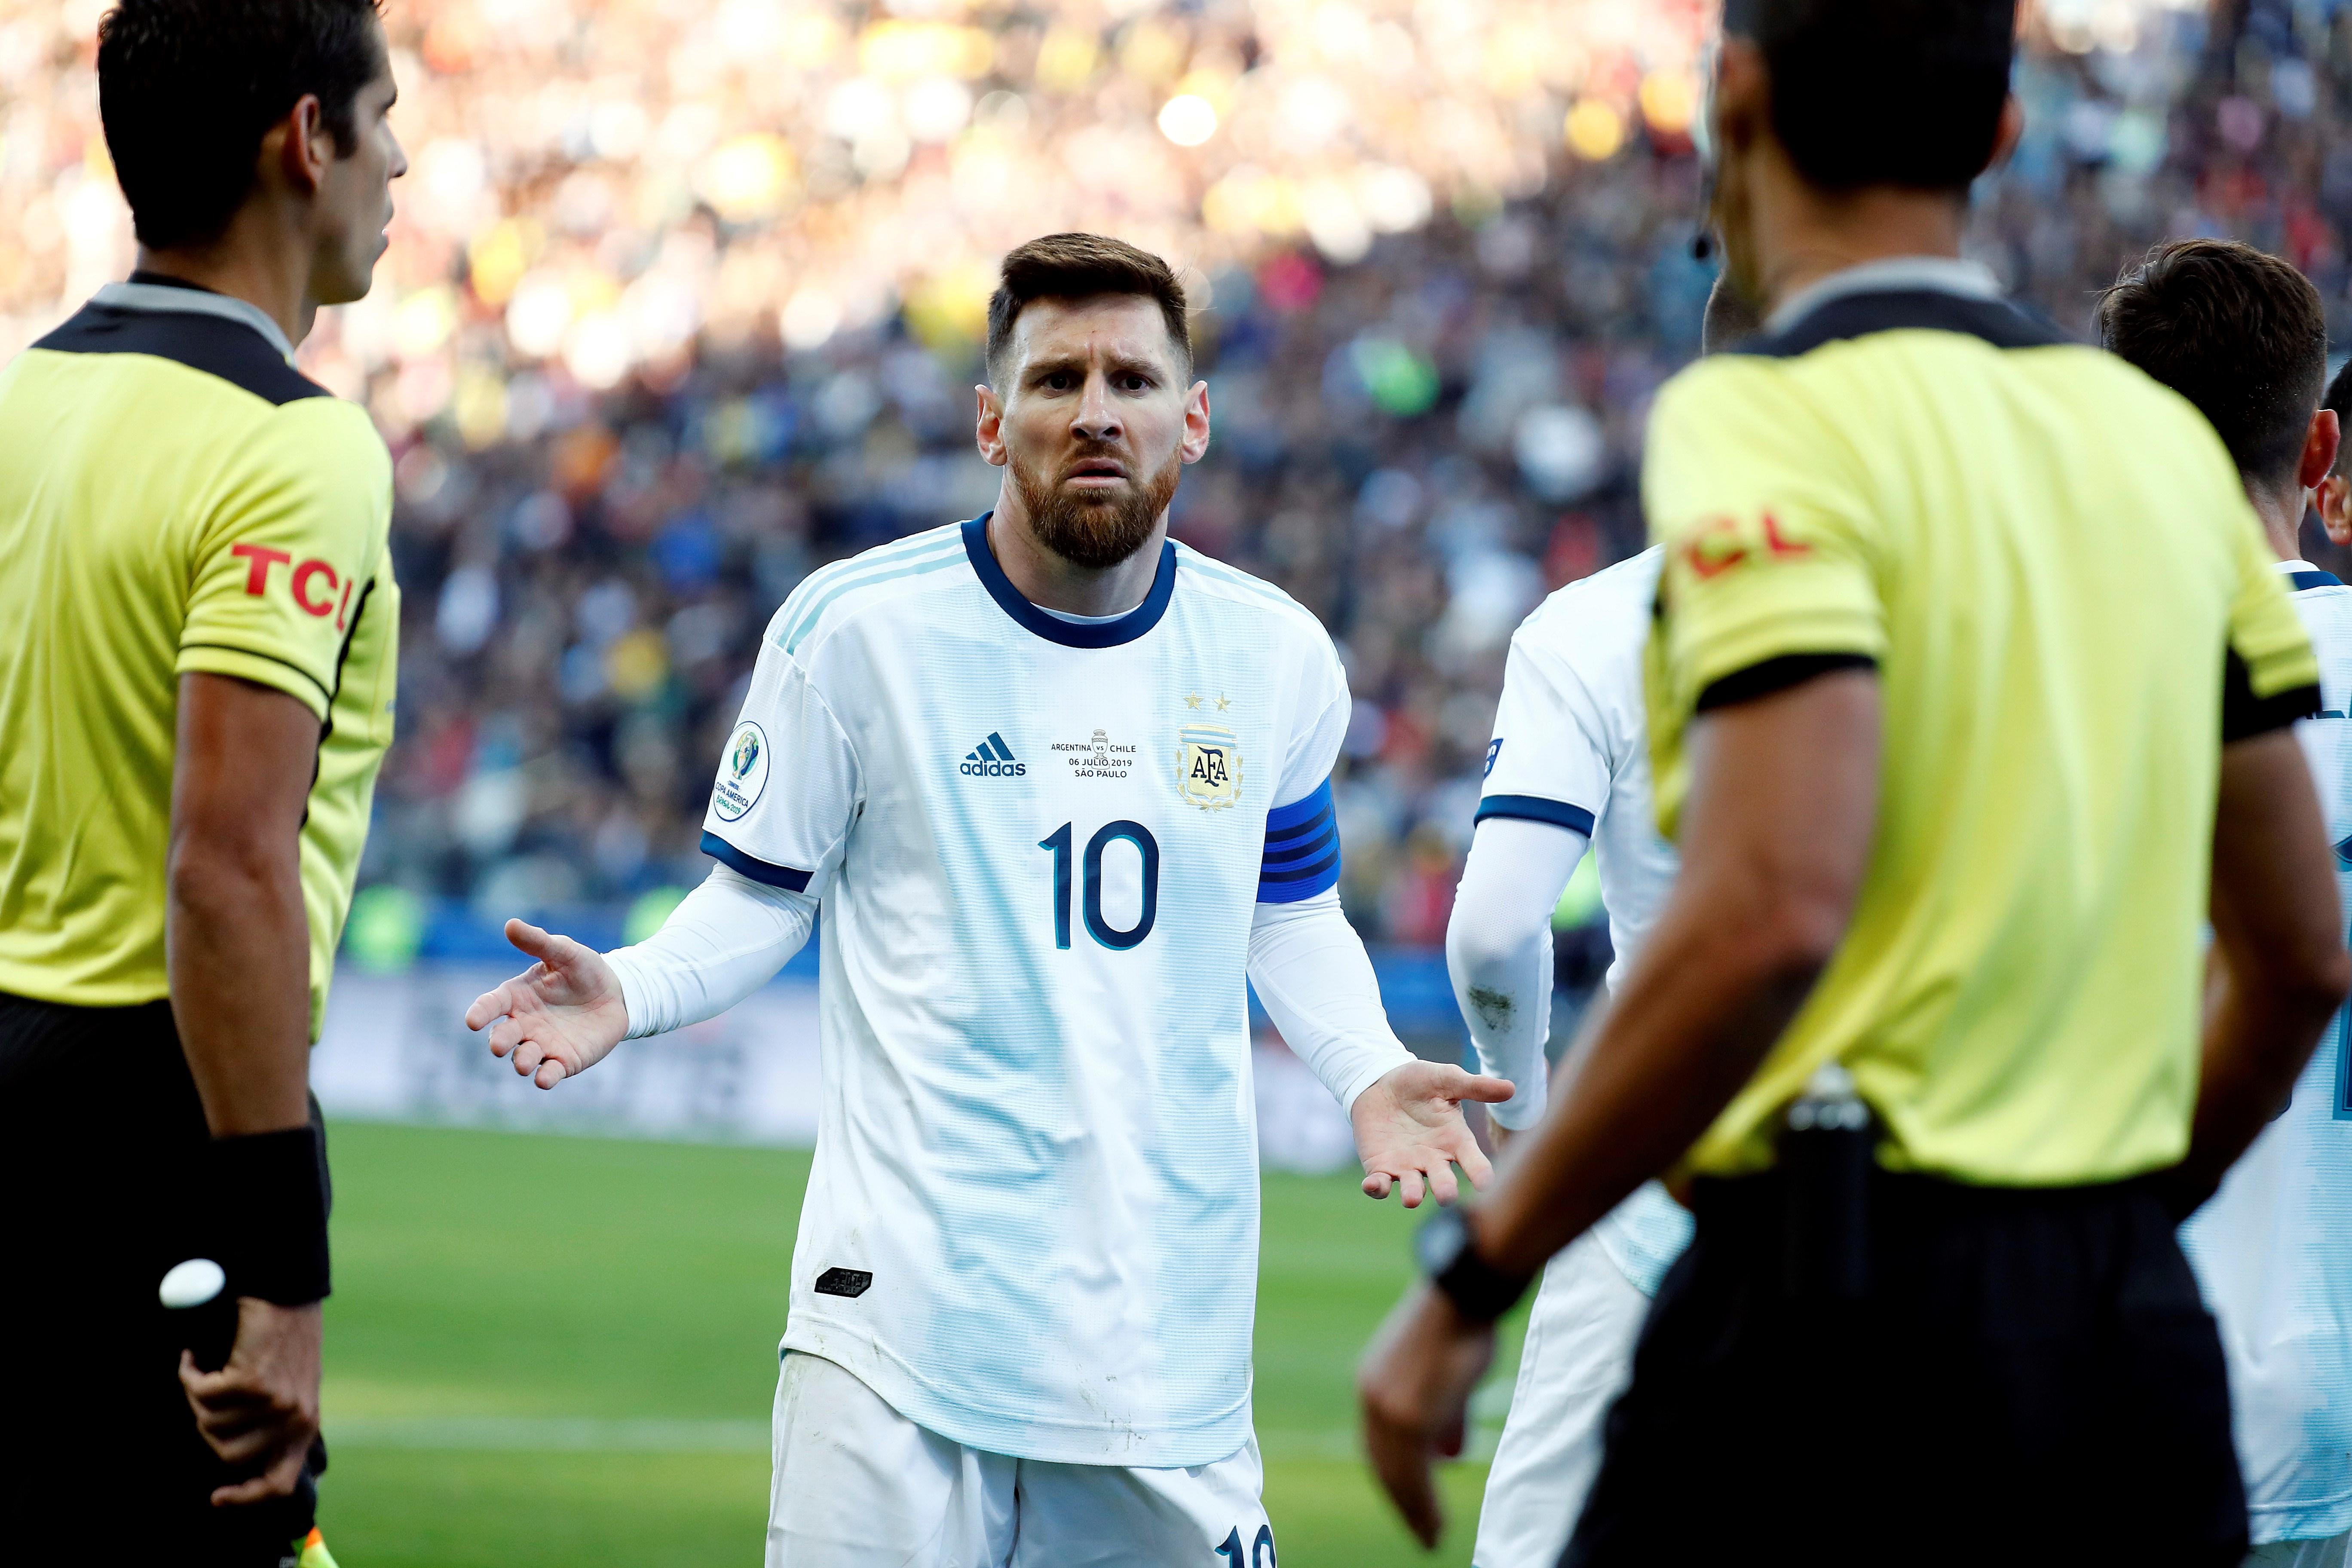 Messi, sancionat tres mesos amb l'Argentina per haver criticat la Conmebol